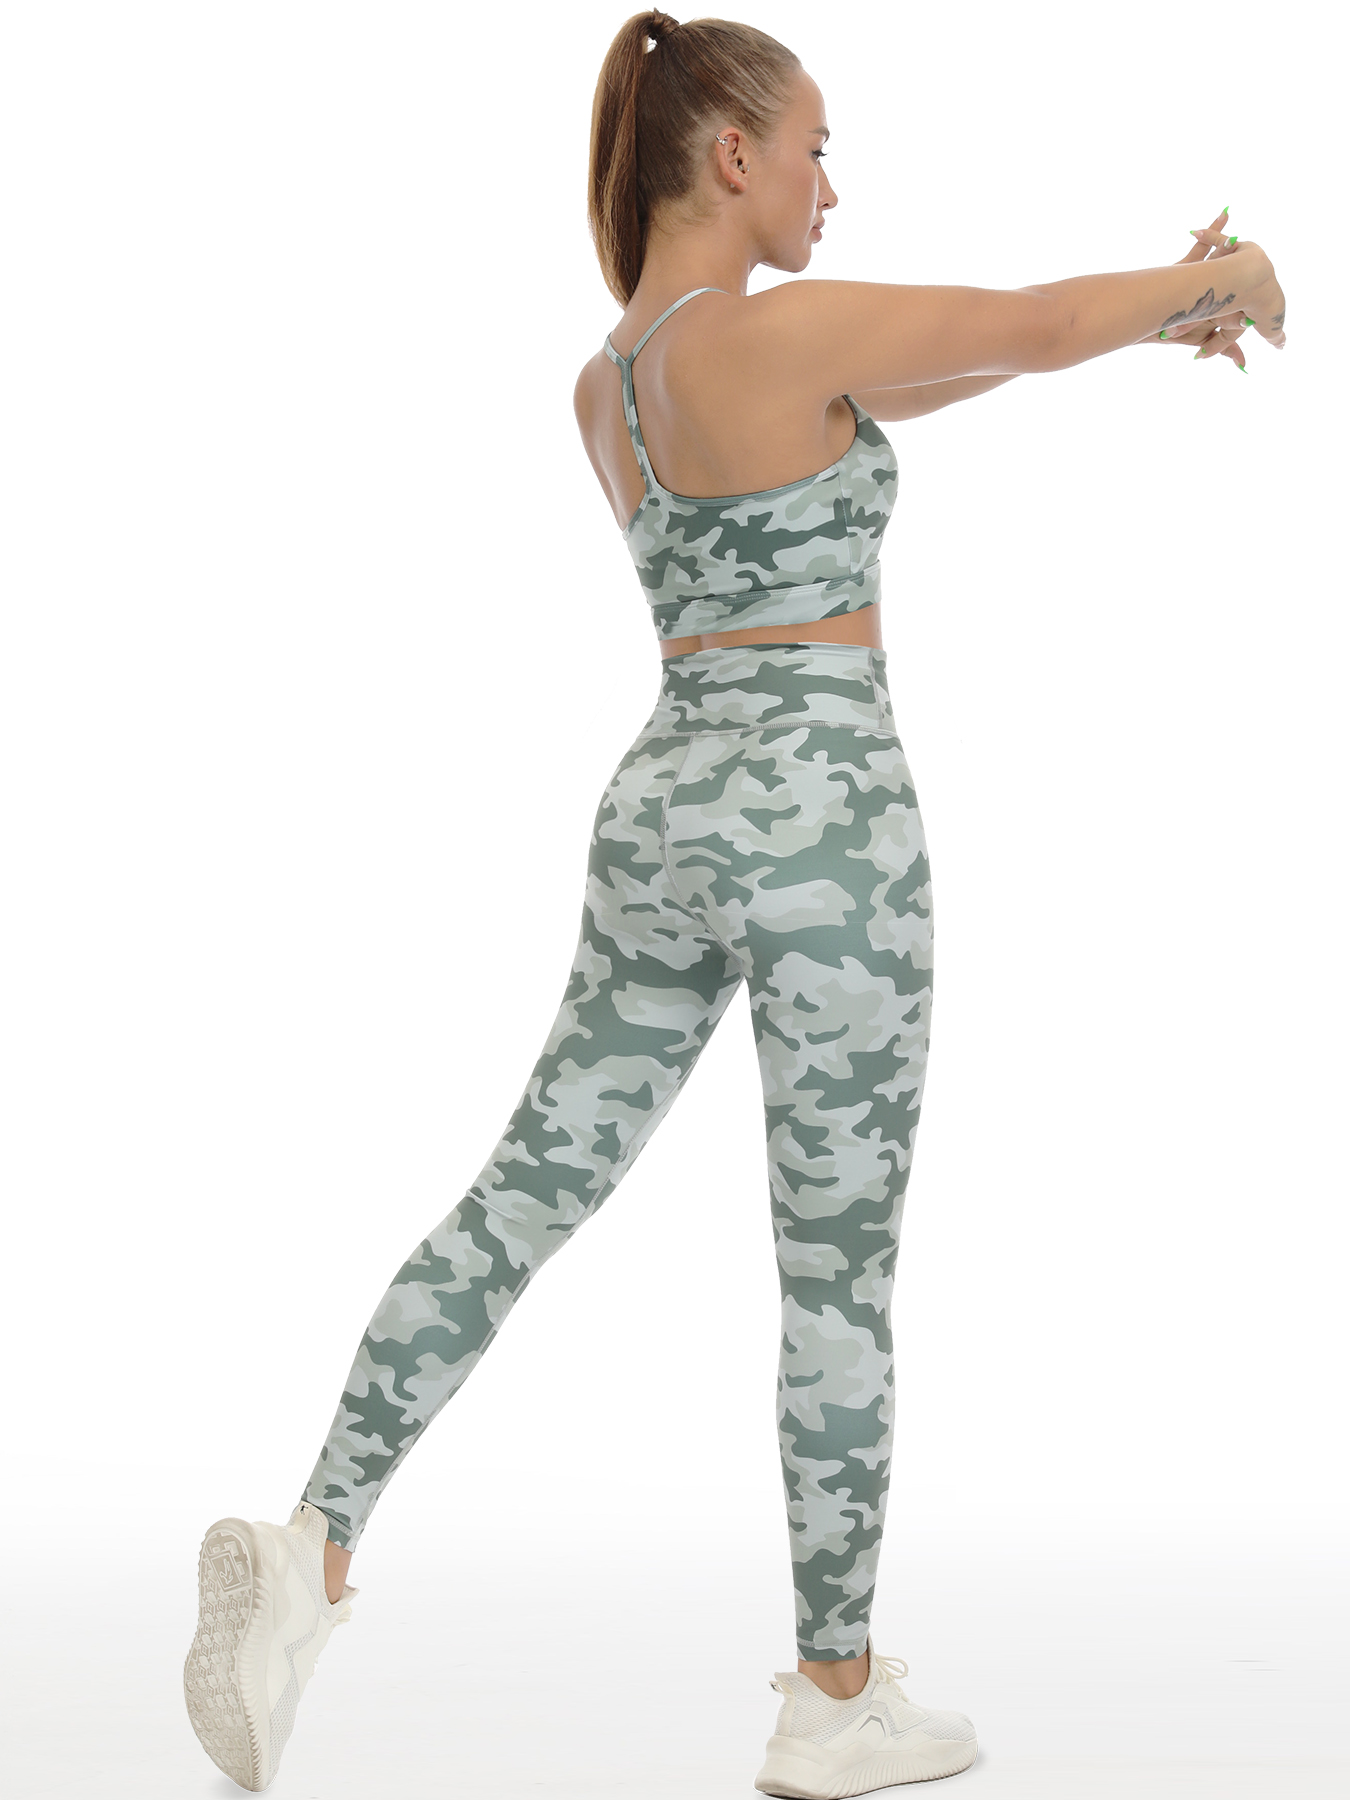 Camouflage Yoga Shirt Women, Fitness Clothing Women Set